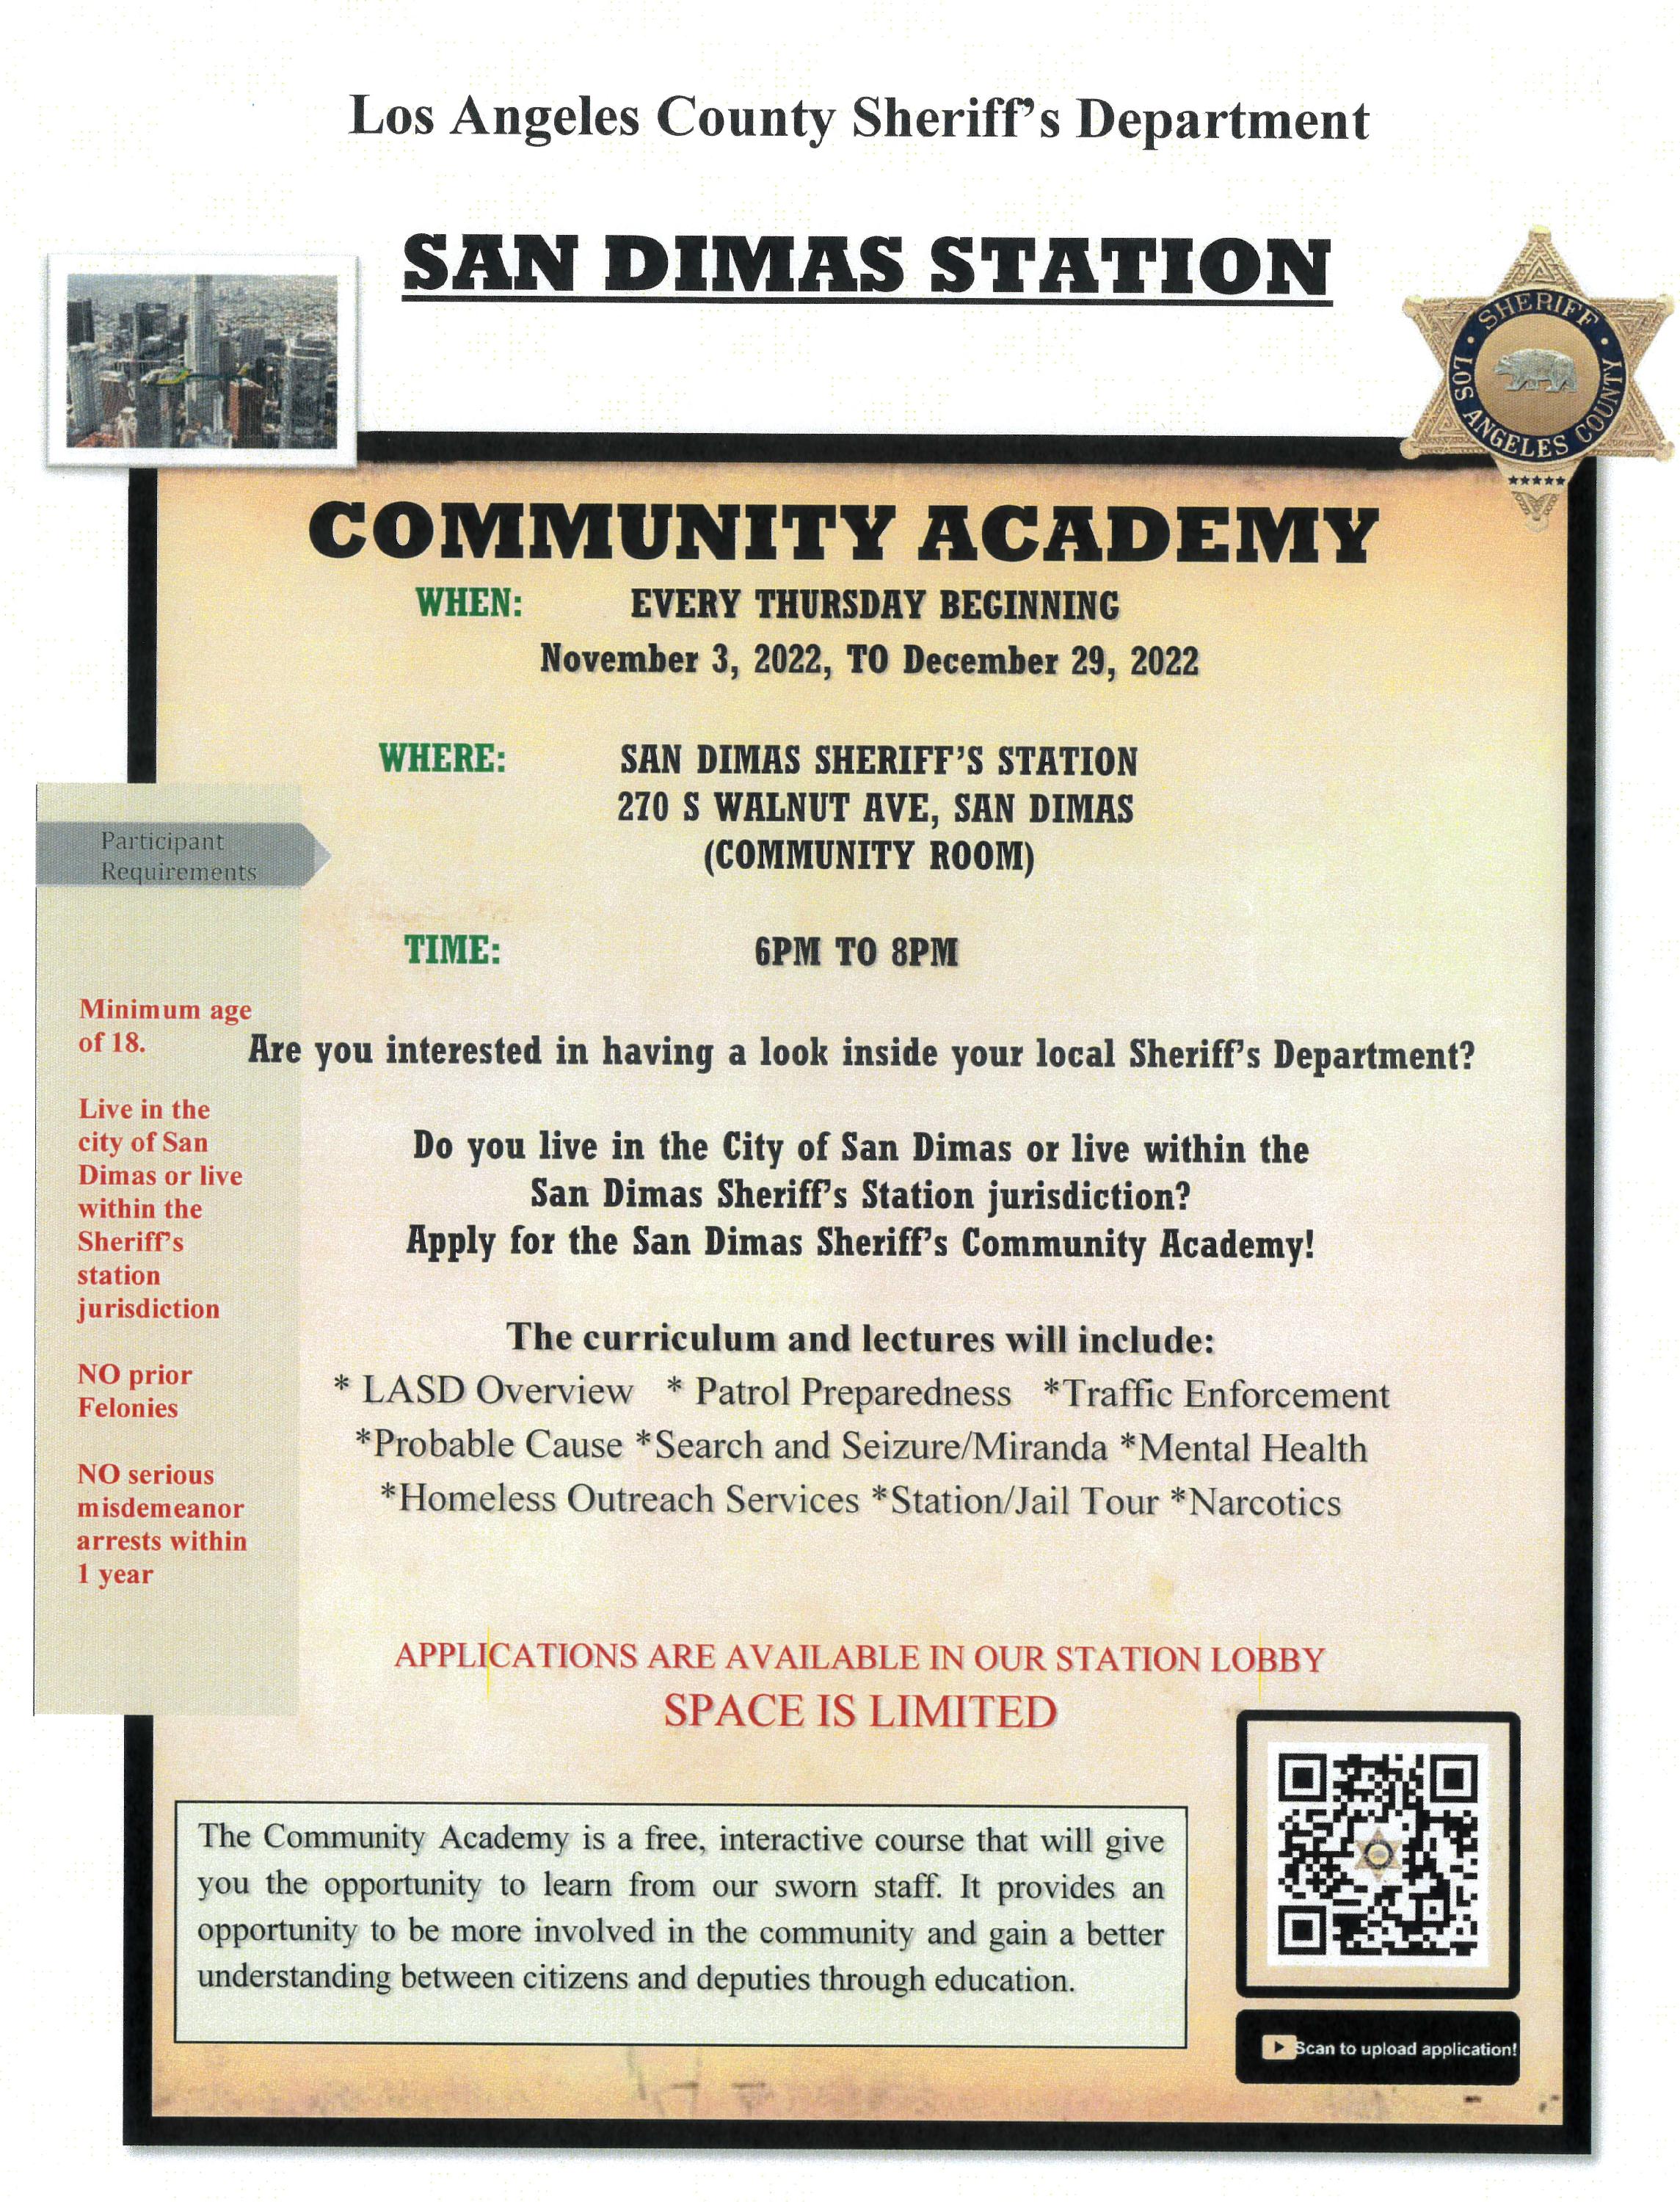 San Dimas Sheriffs - Community Academy 2022